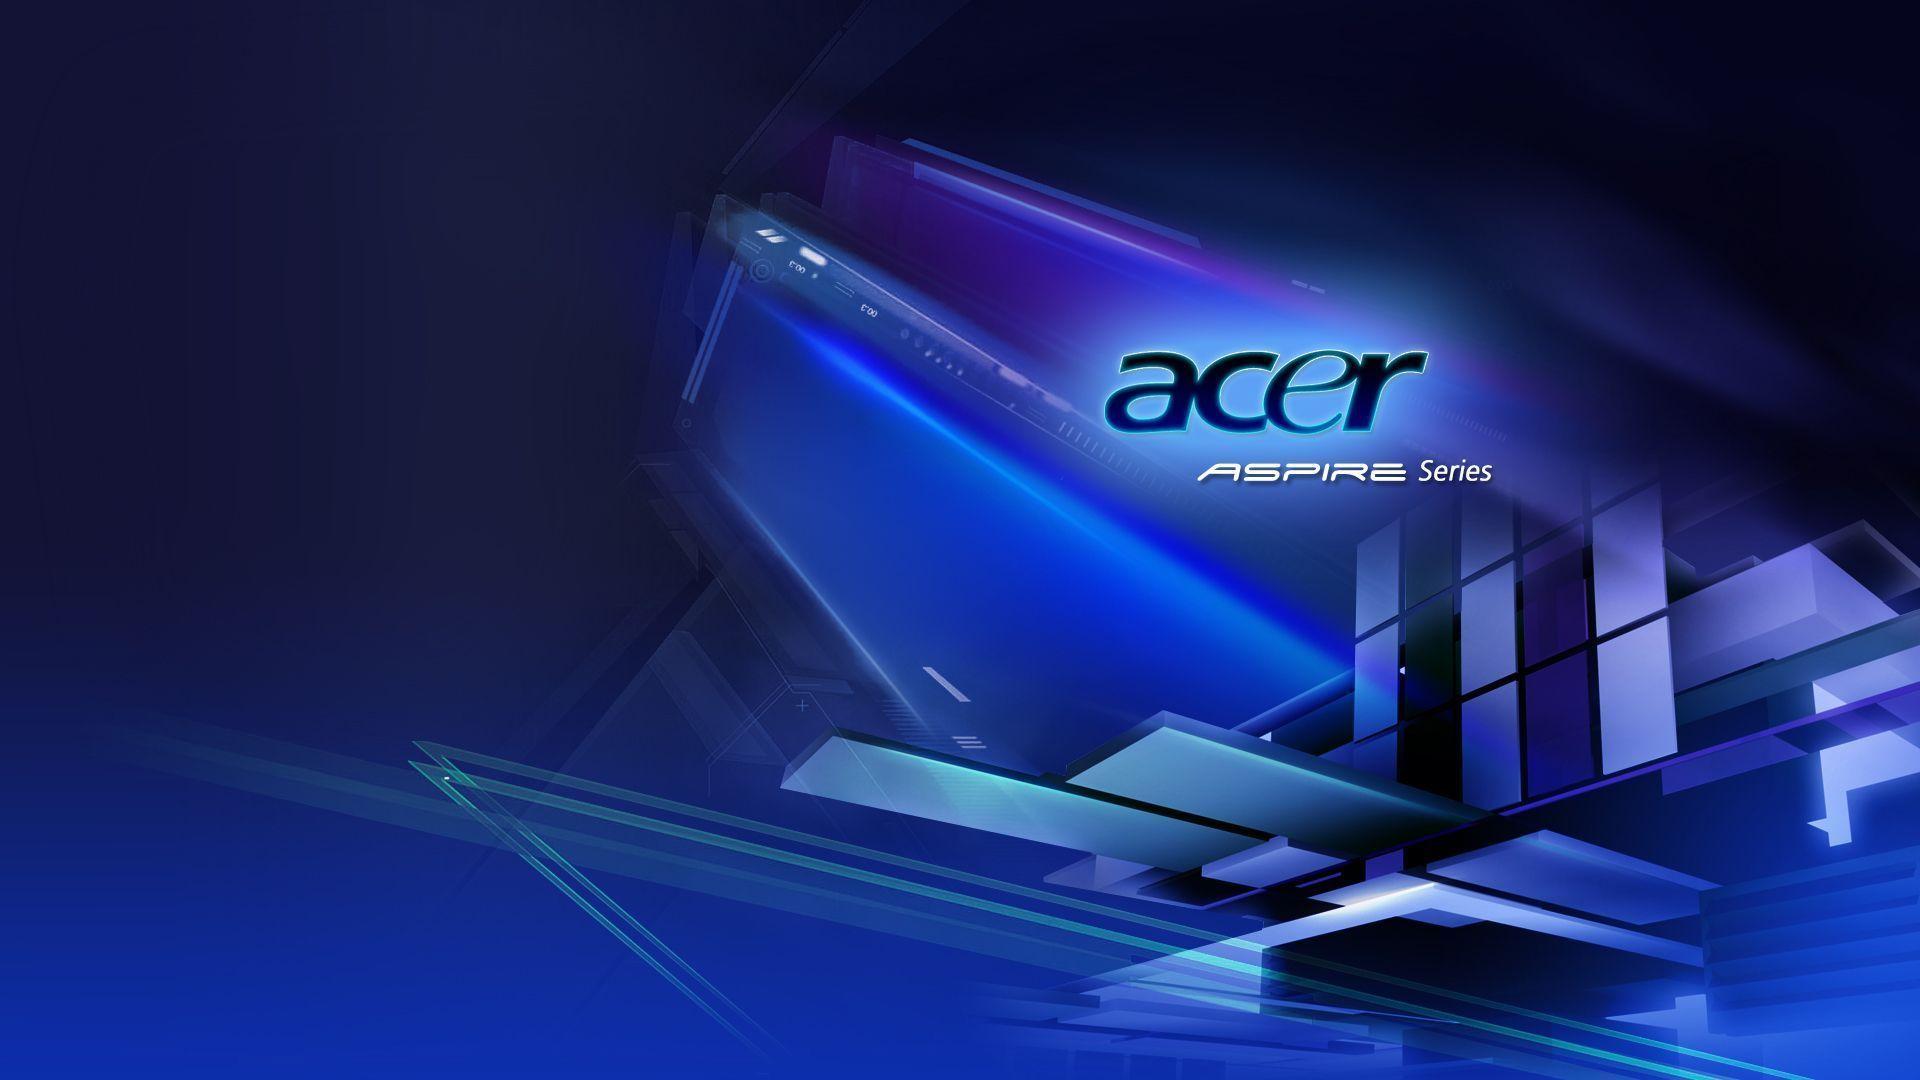 Cùng khám phá những hình nền đẹp mắt của Acer để làm mới giao diện màn hình của bạn. Thật tuyệt với khi bạn chọn cho mình một hình nền dựa trên sở thích và phong cách của mình.